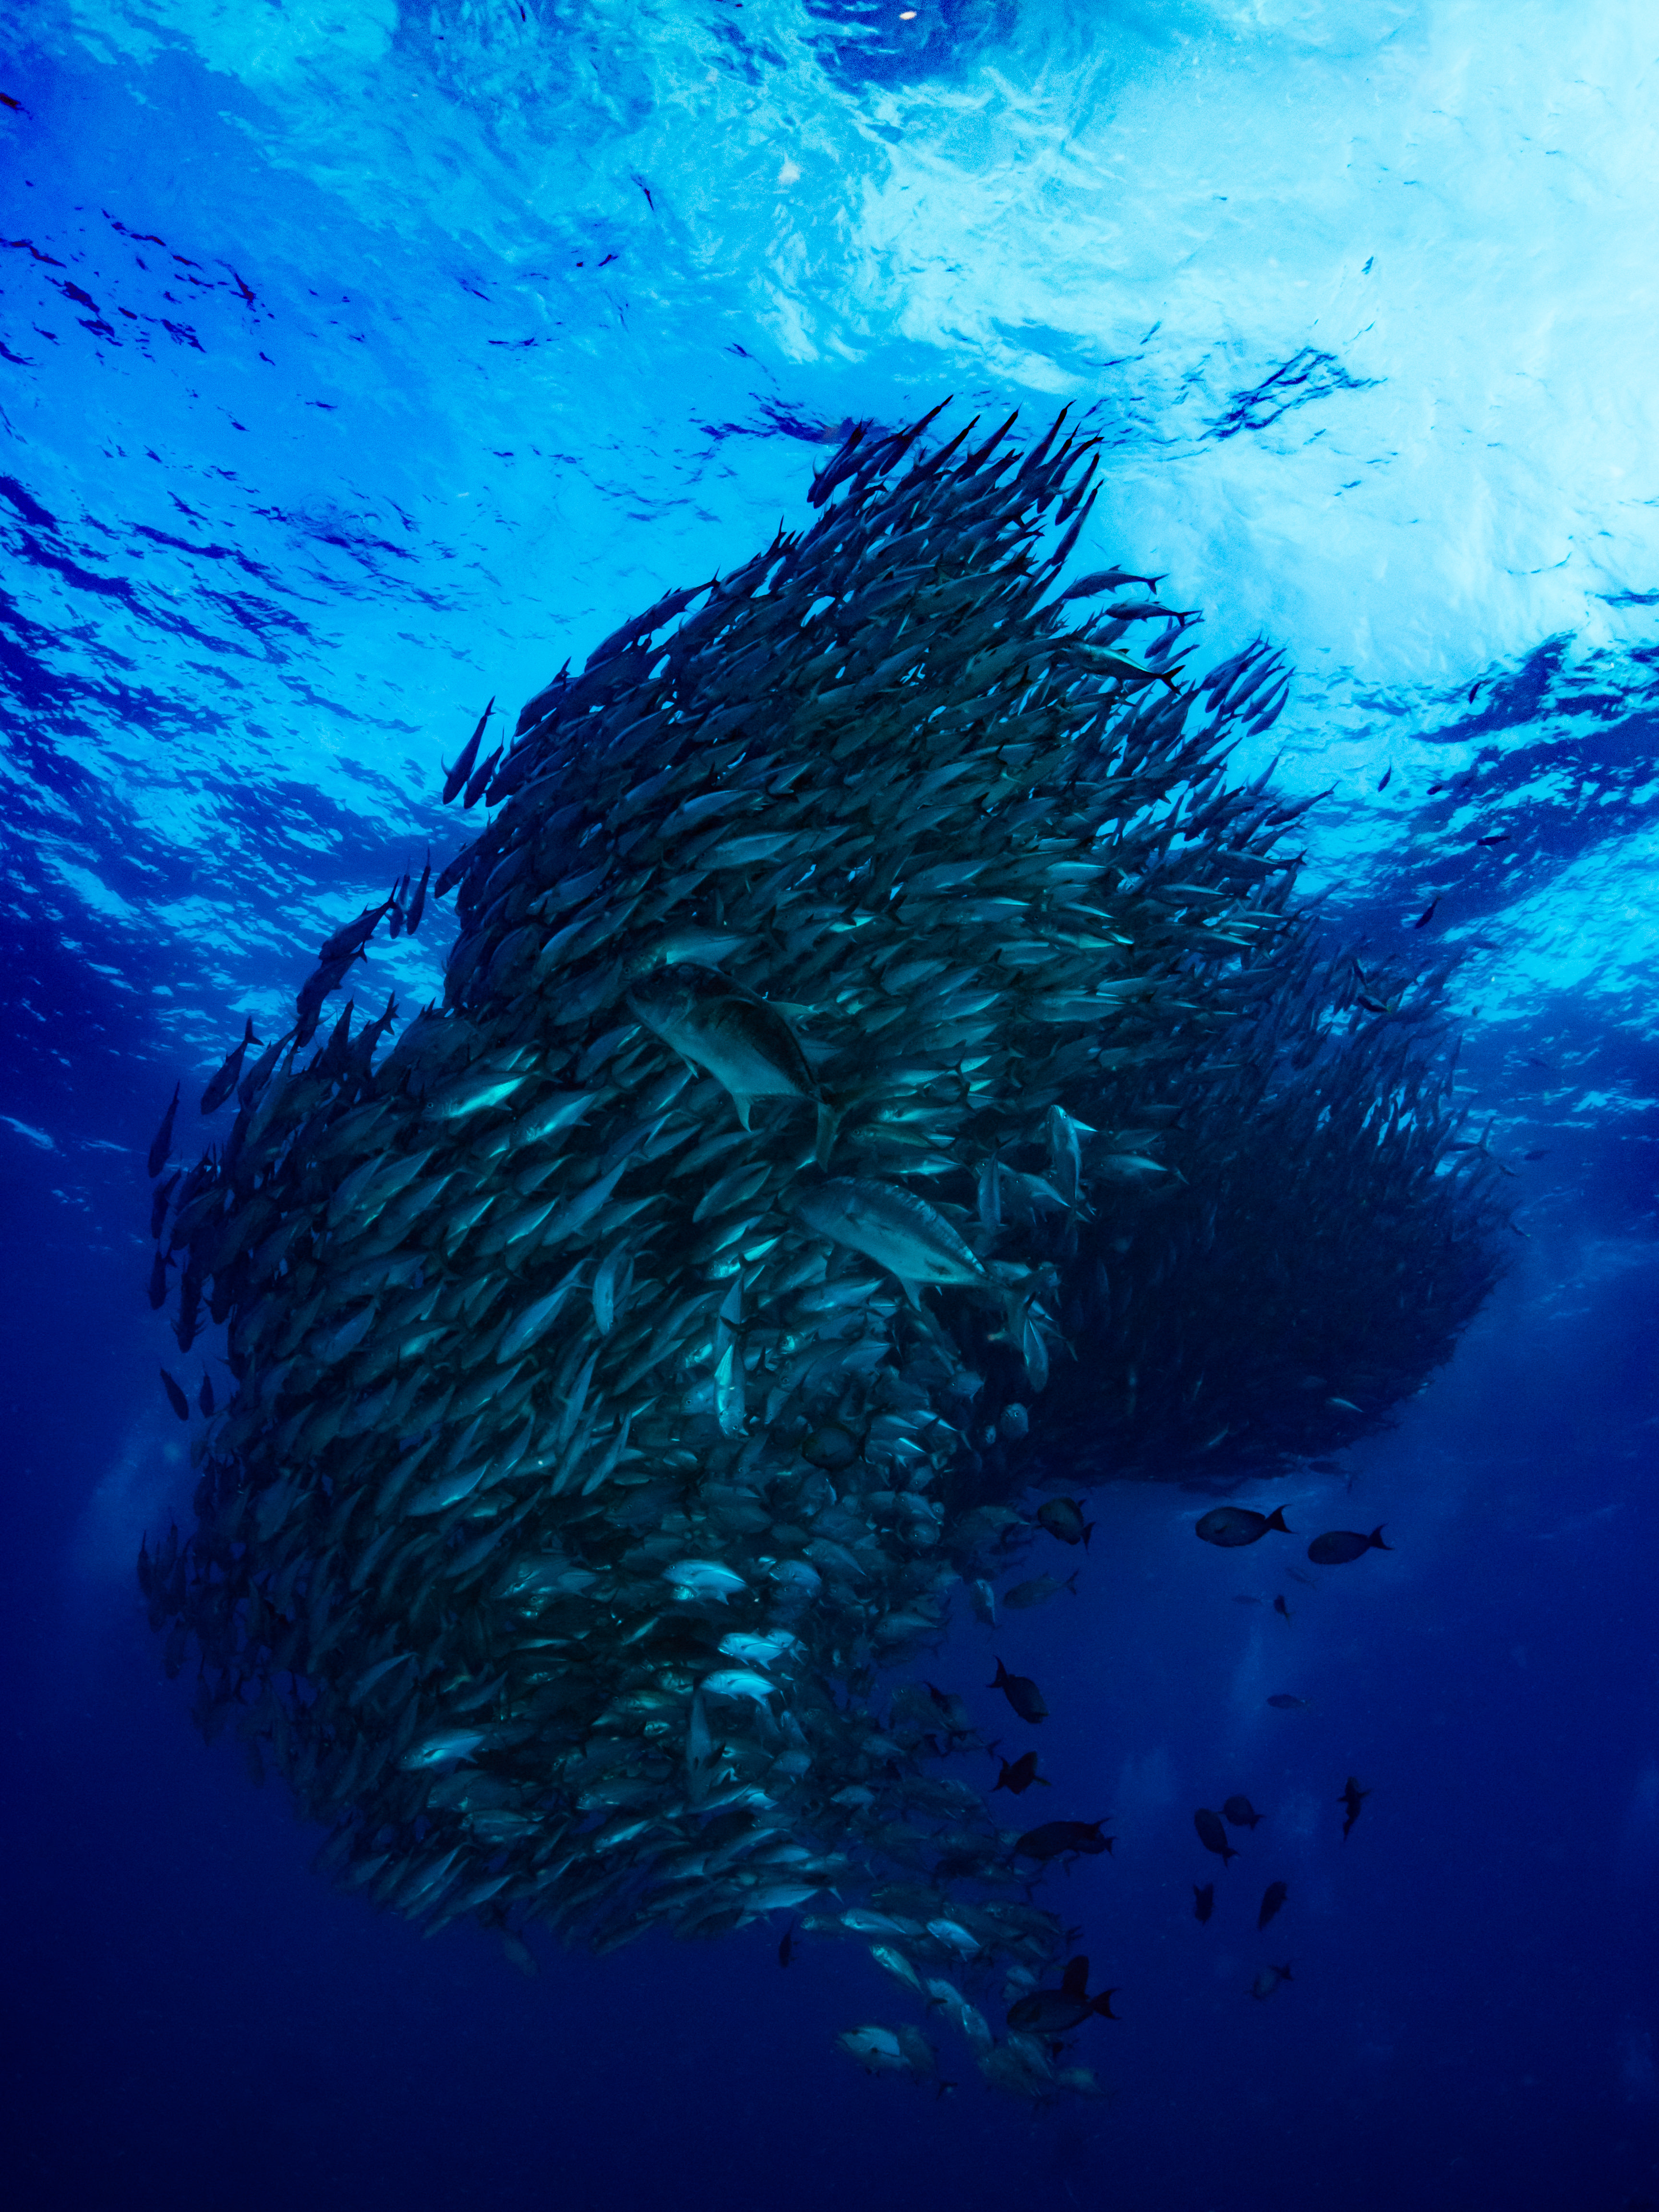 ギンガメアジの魚群トルネードの写真を無料ダウンロード フリー素材 ぱくたそ